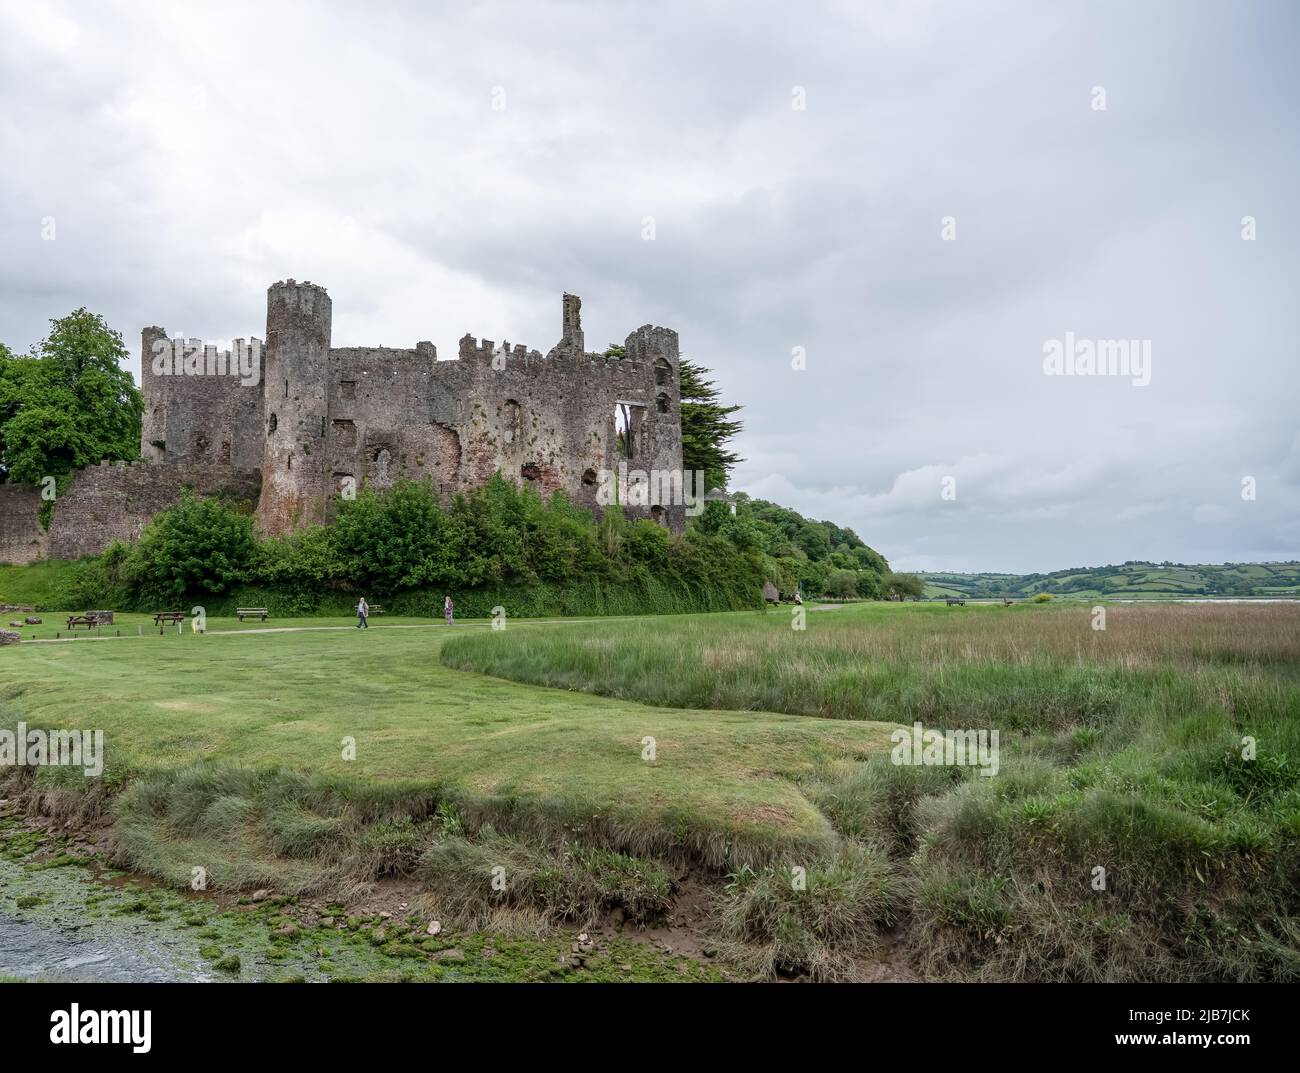 Château de Laugharne (Castell Talacharn), Laugharne pays de Galles. Situé sur l'estuaire de la rivière Tâf. Est. 1116 et reconstruit comme un bastion normand 16th C Banque D'Images